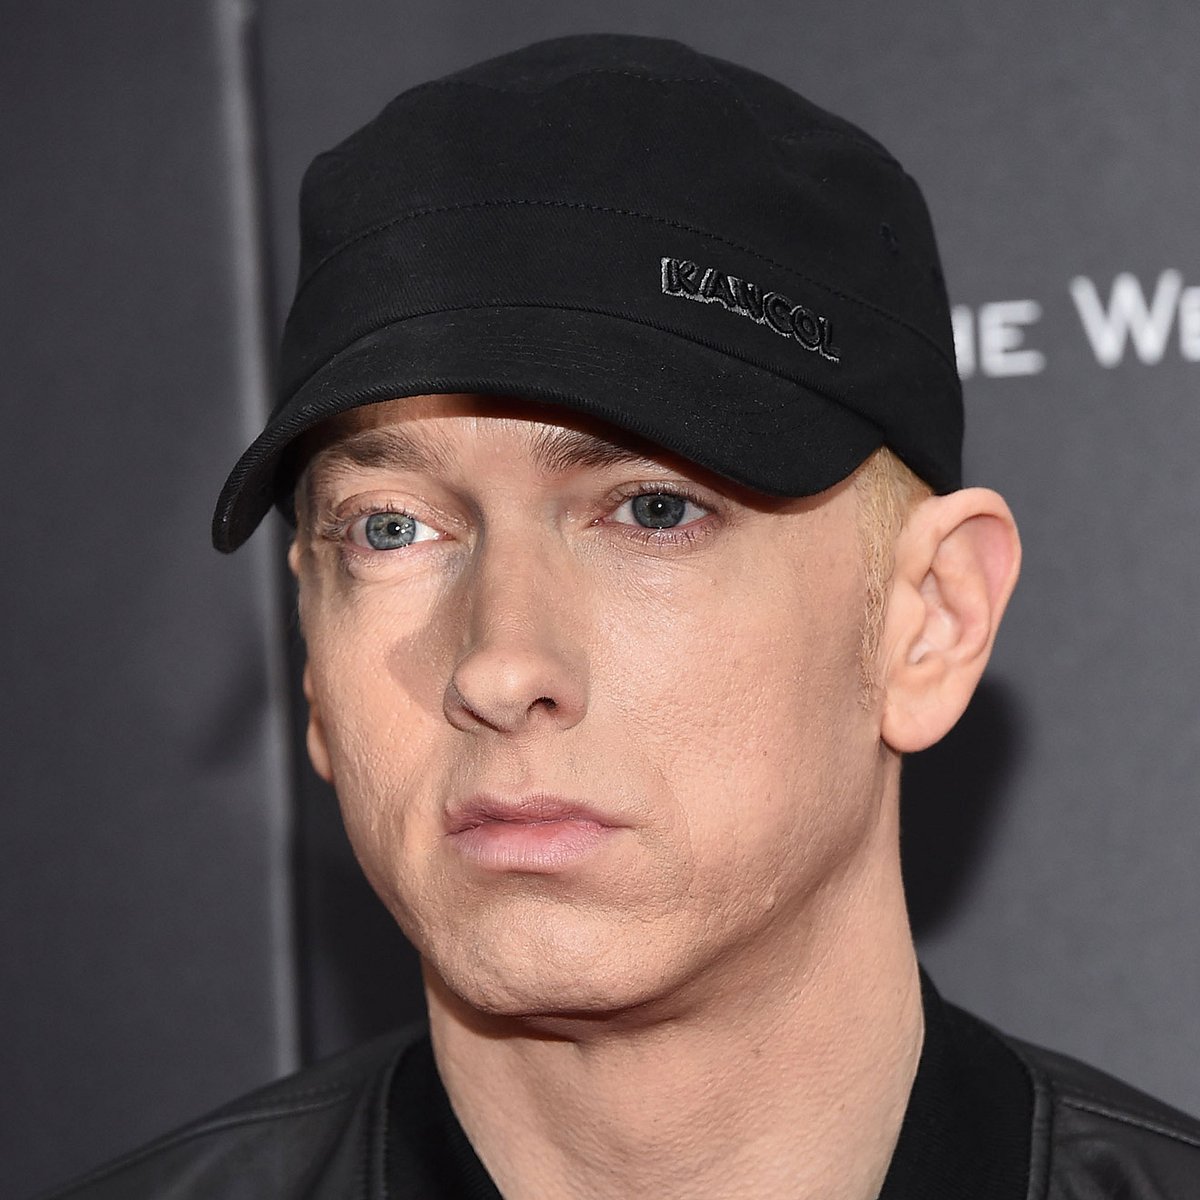 Vater von Eminem verstorben: Ihre traurige Geschichte